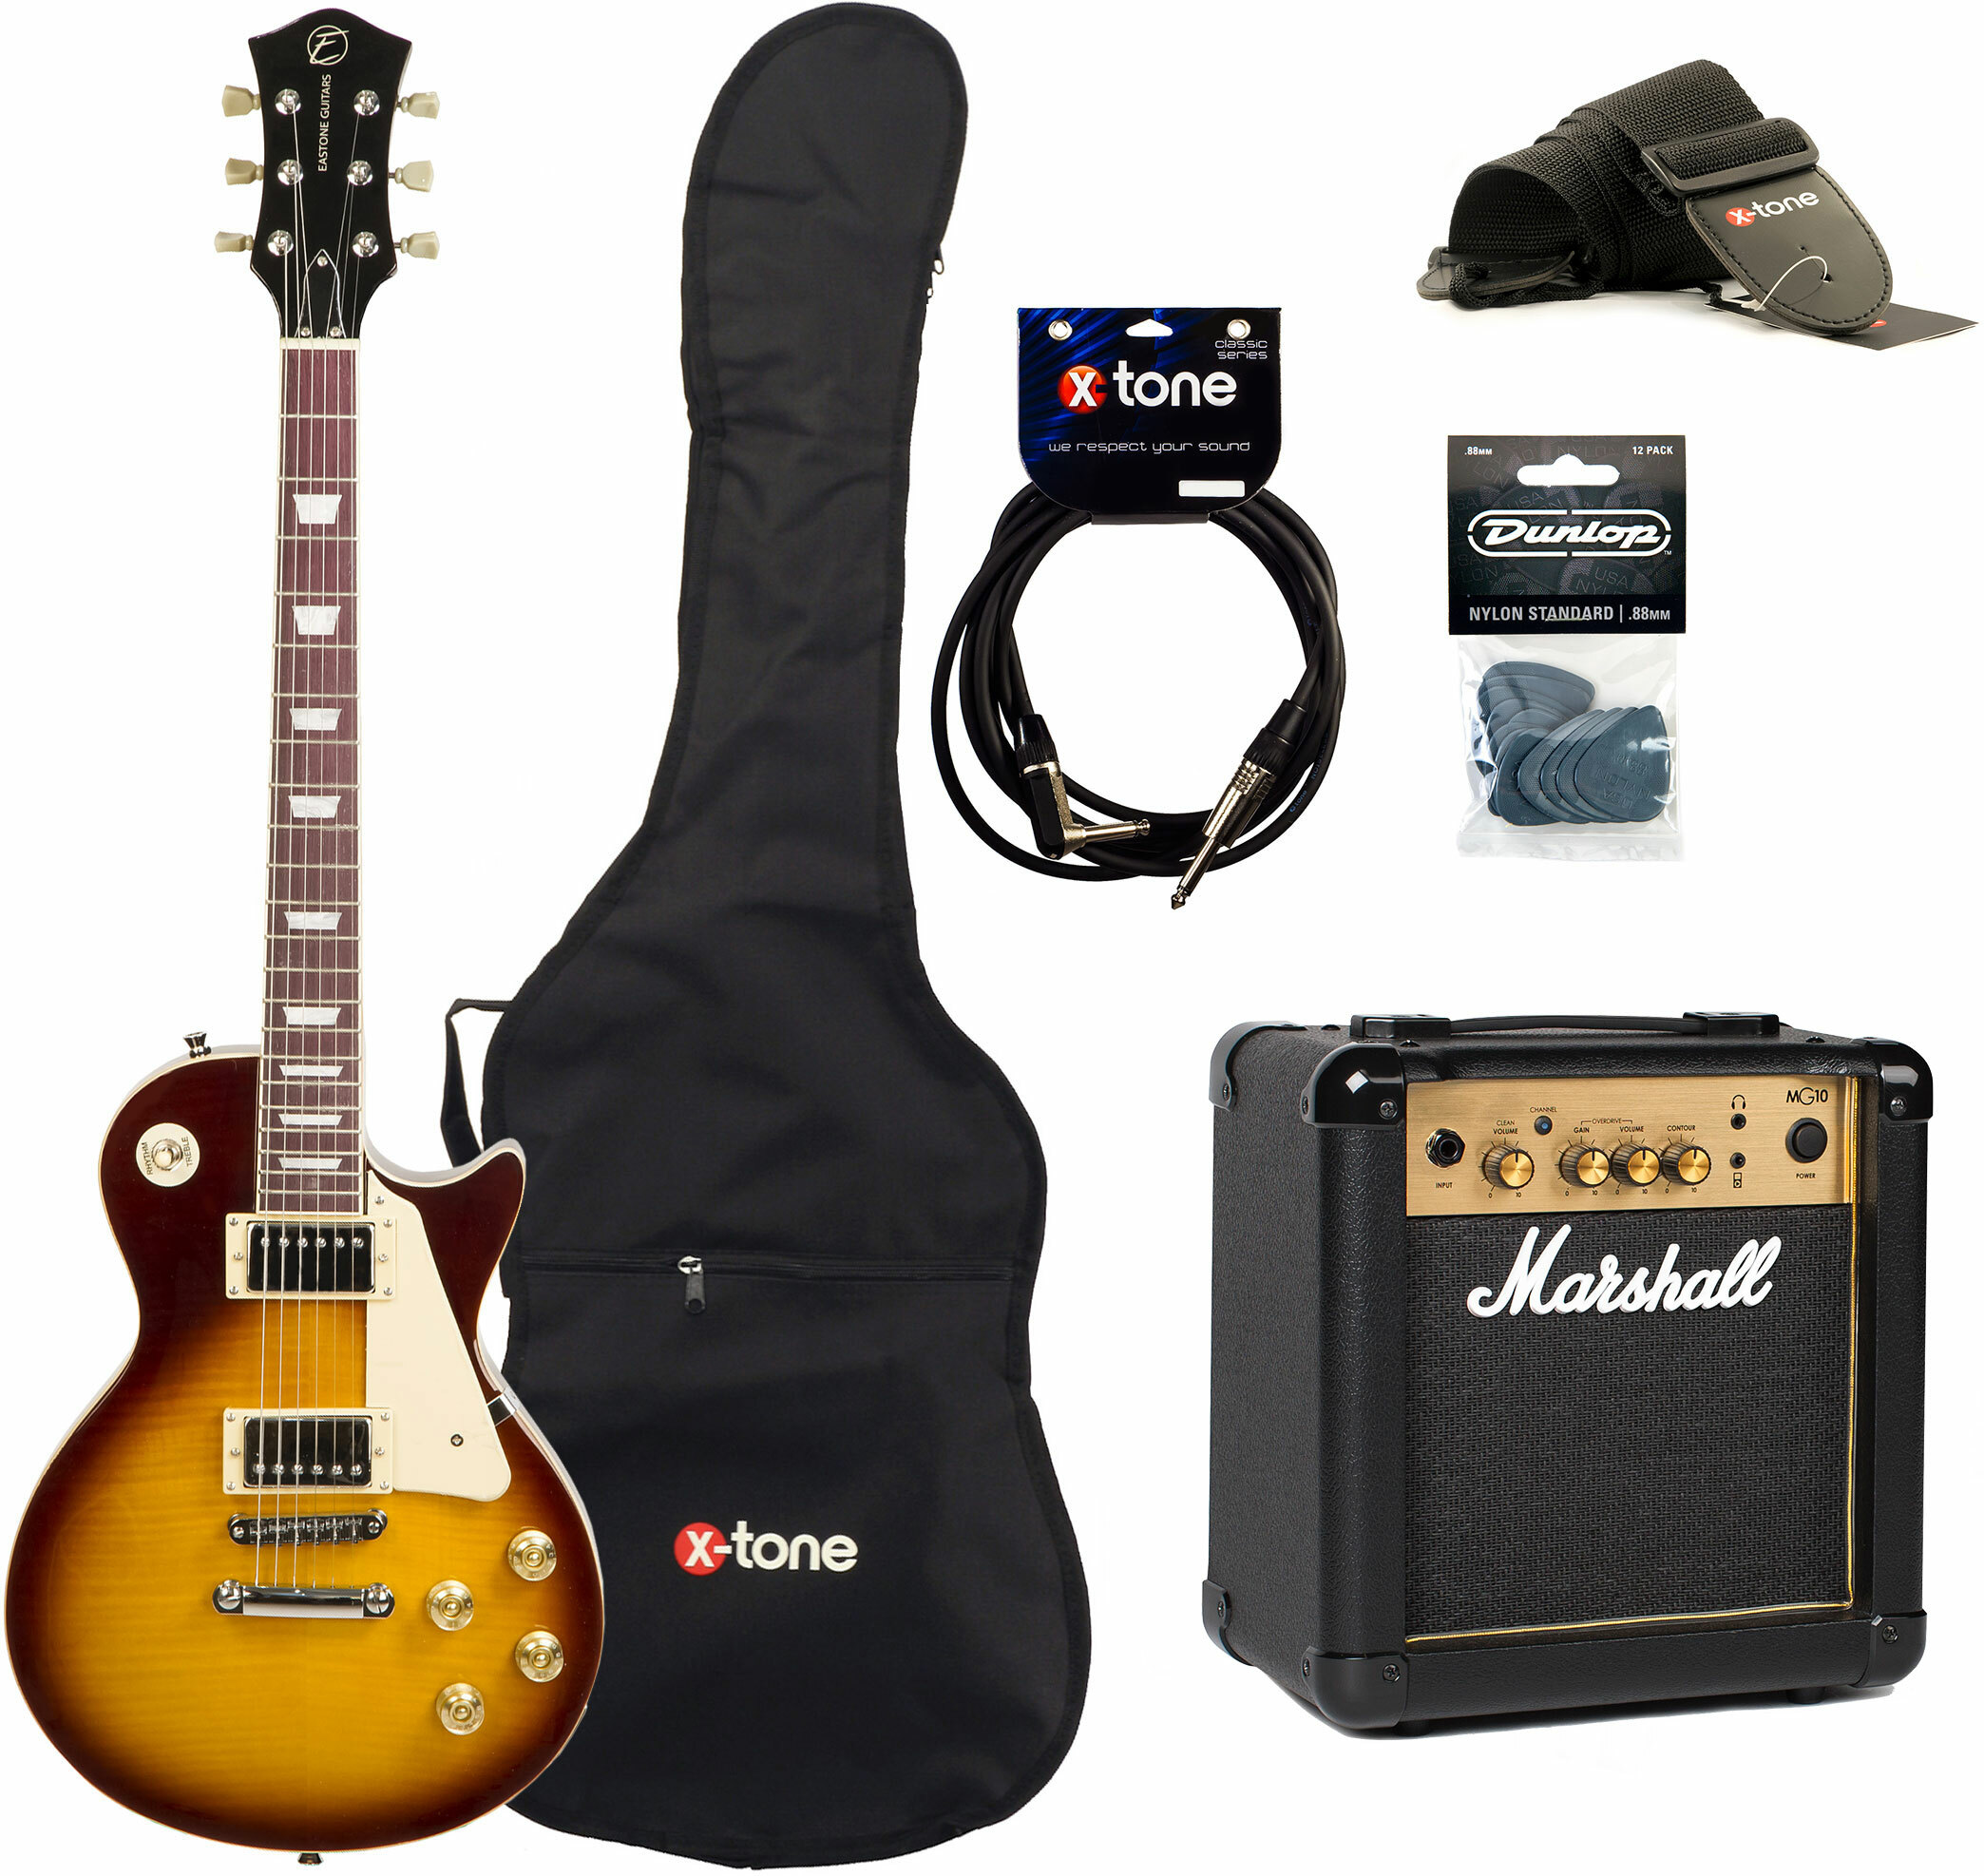 Pack guitare électrique Eastone LP200 HB +MARSHALL MG10 10W +CABLE + MEDIATORS +HOUSSE - honey sunburst sunburst